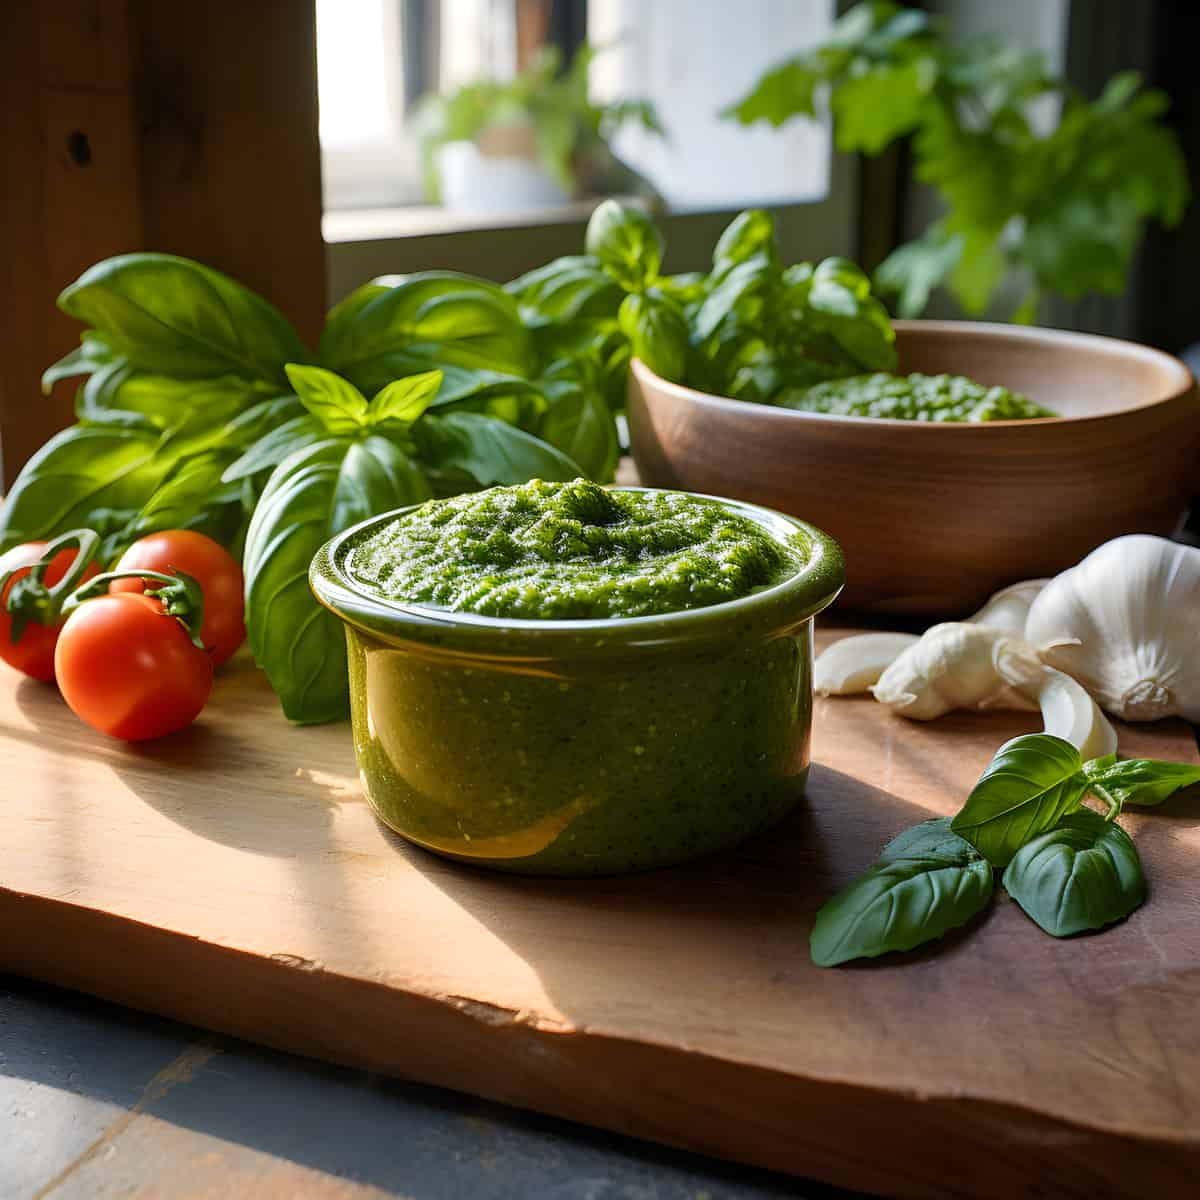 Pesto on a kitchen counter